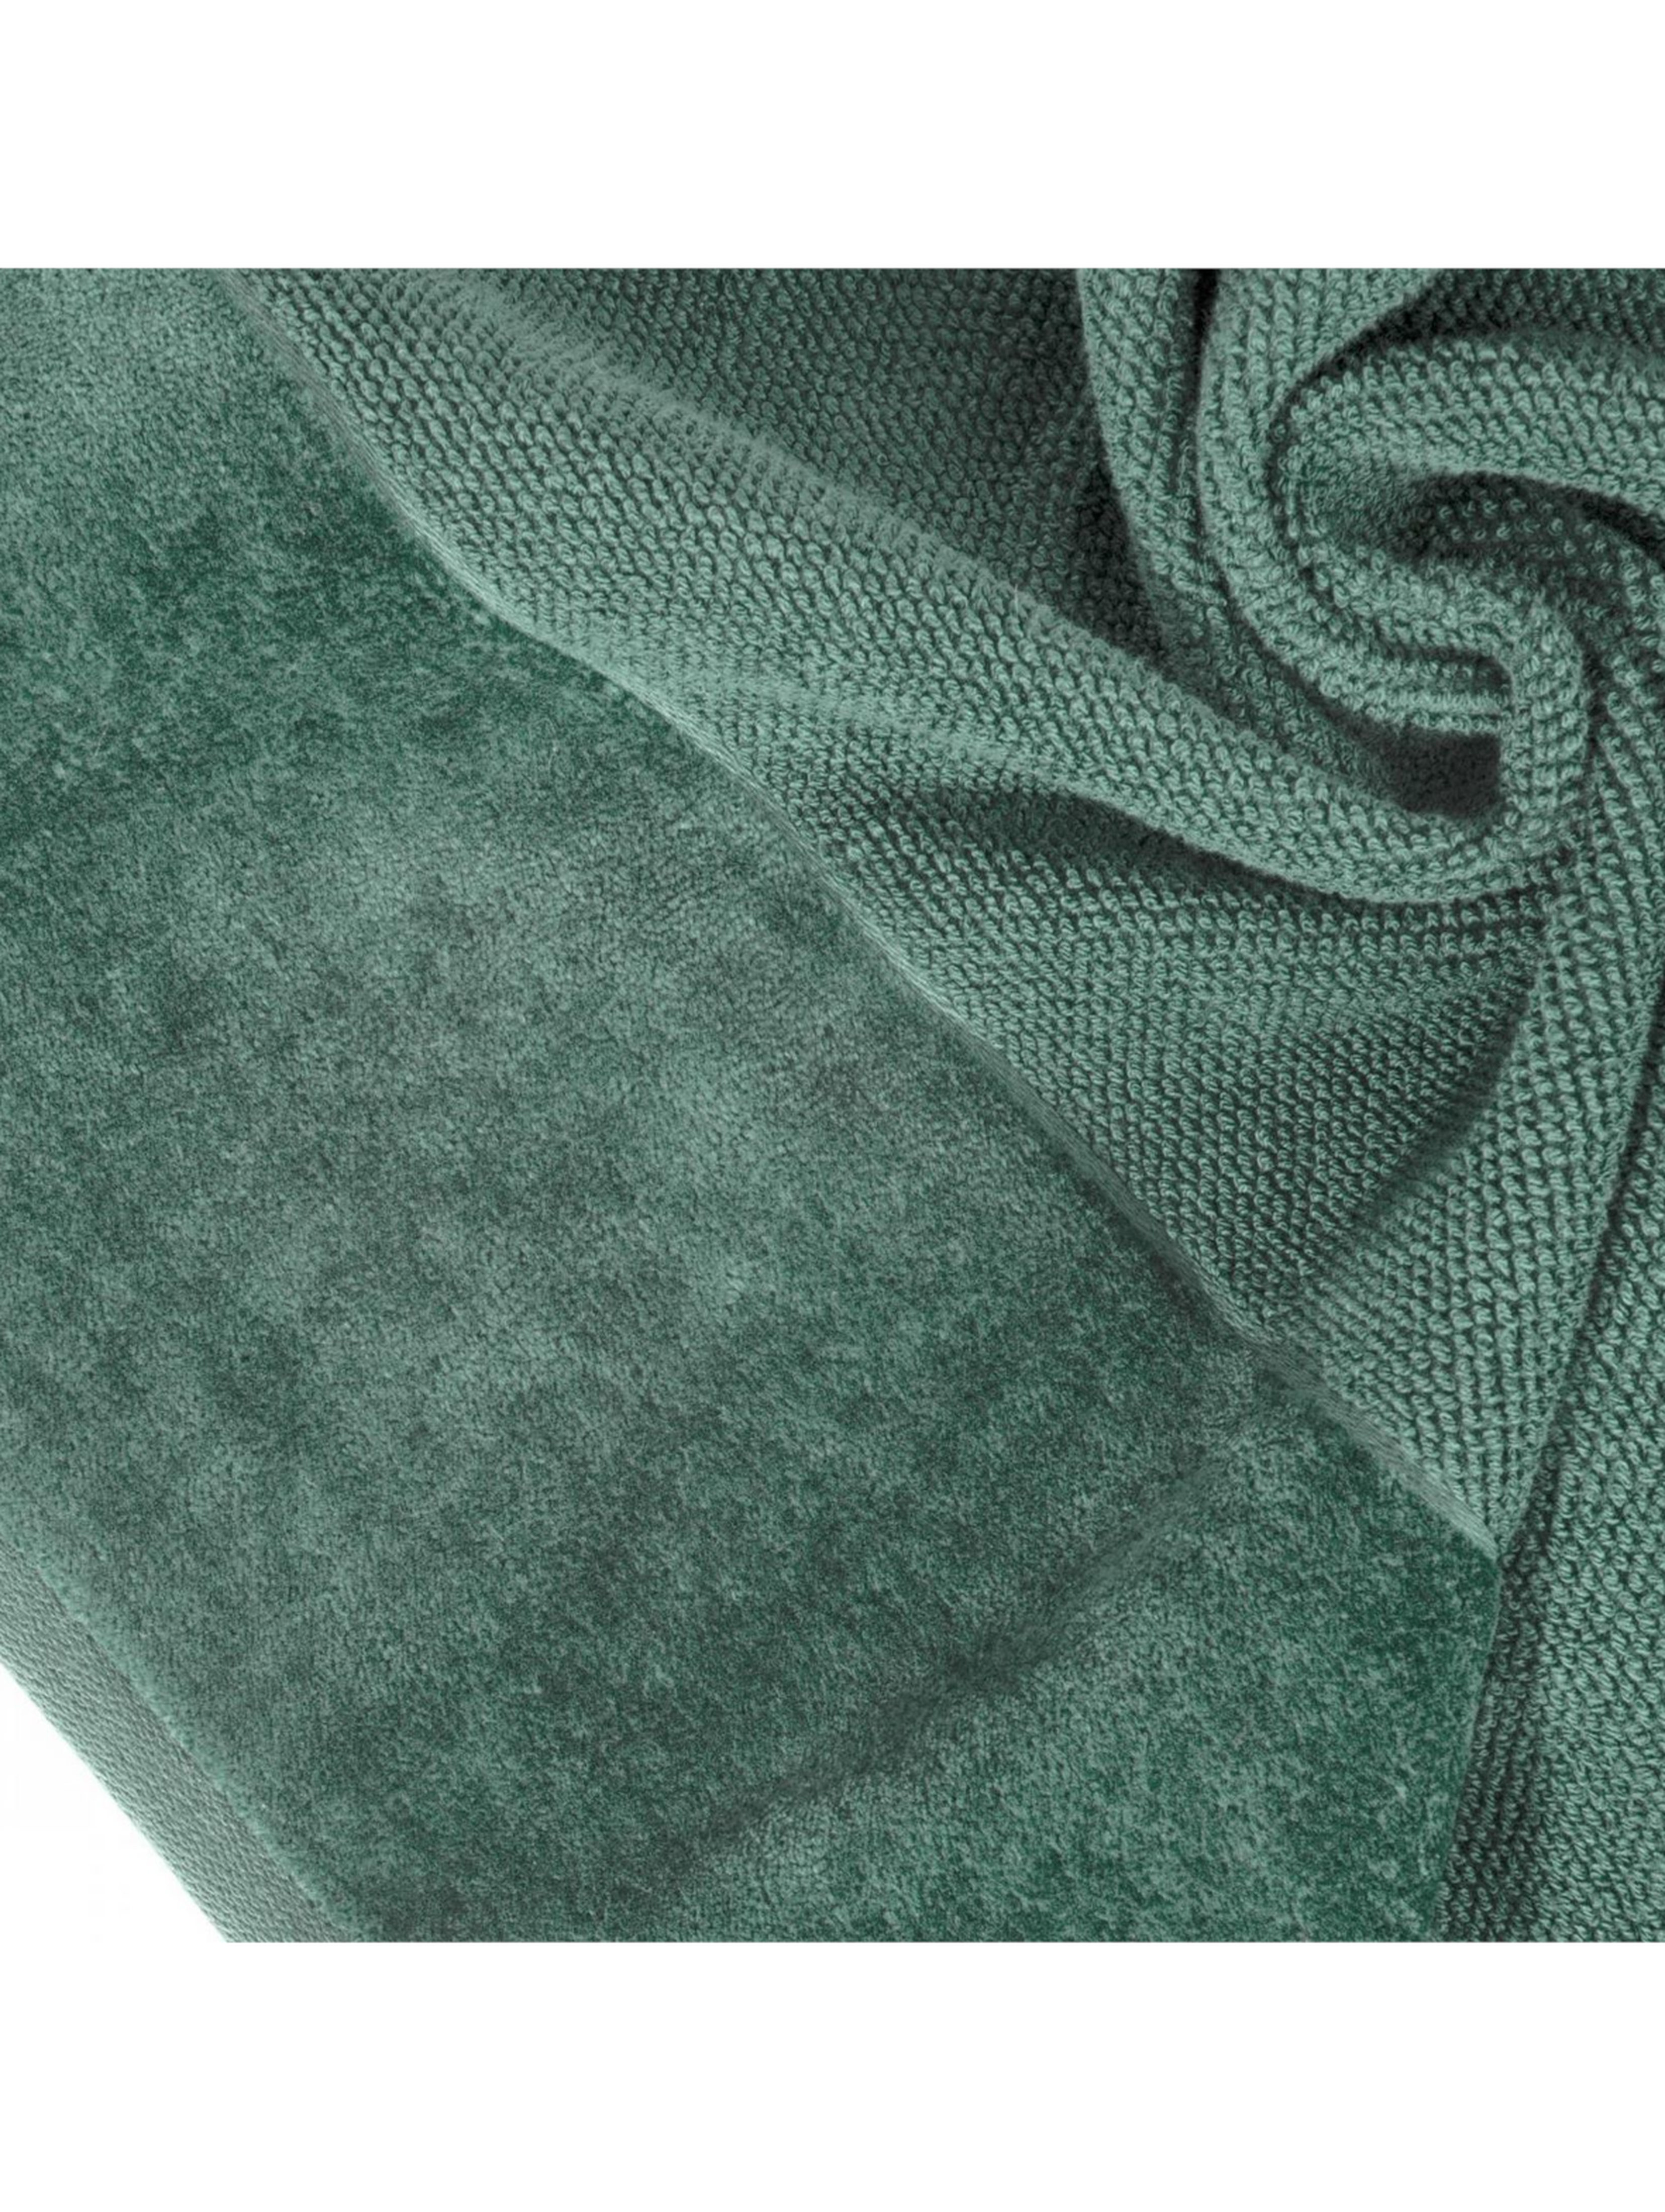 Zielony ręcznik 70x140 cm z ozdobnym pasem